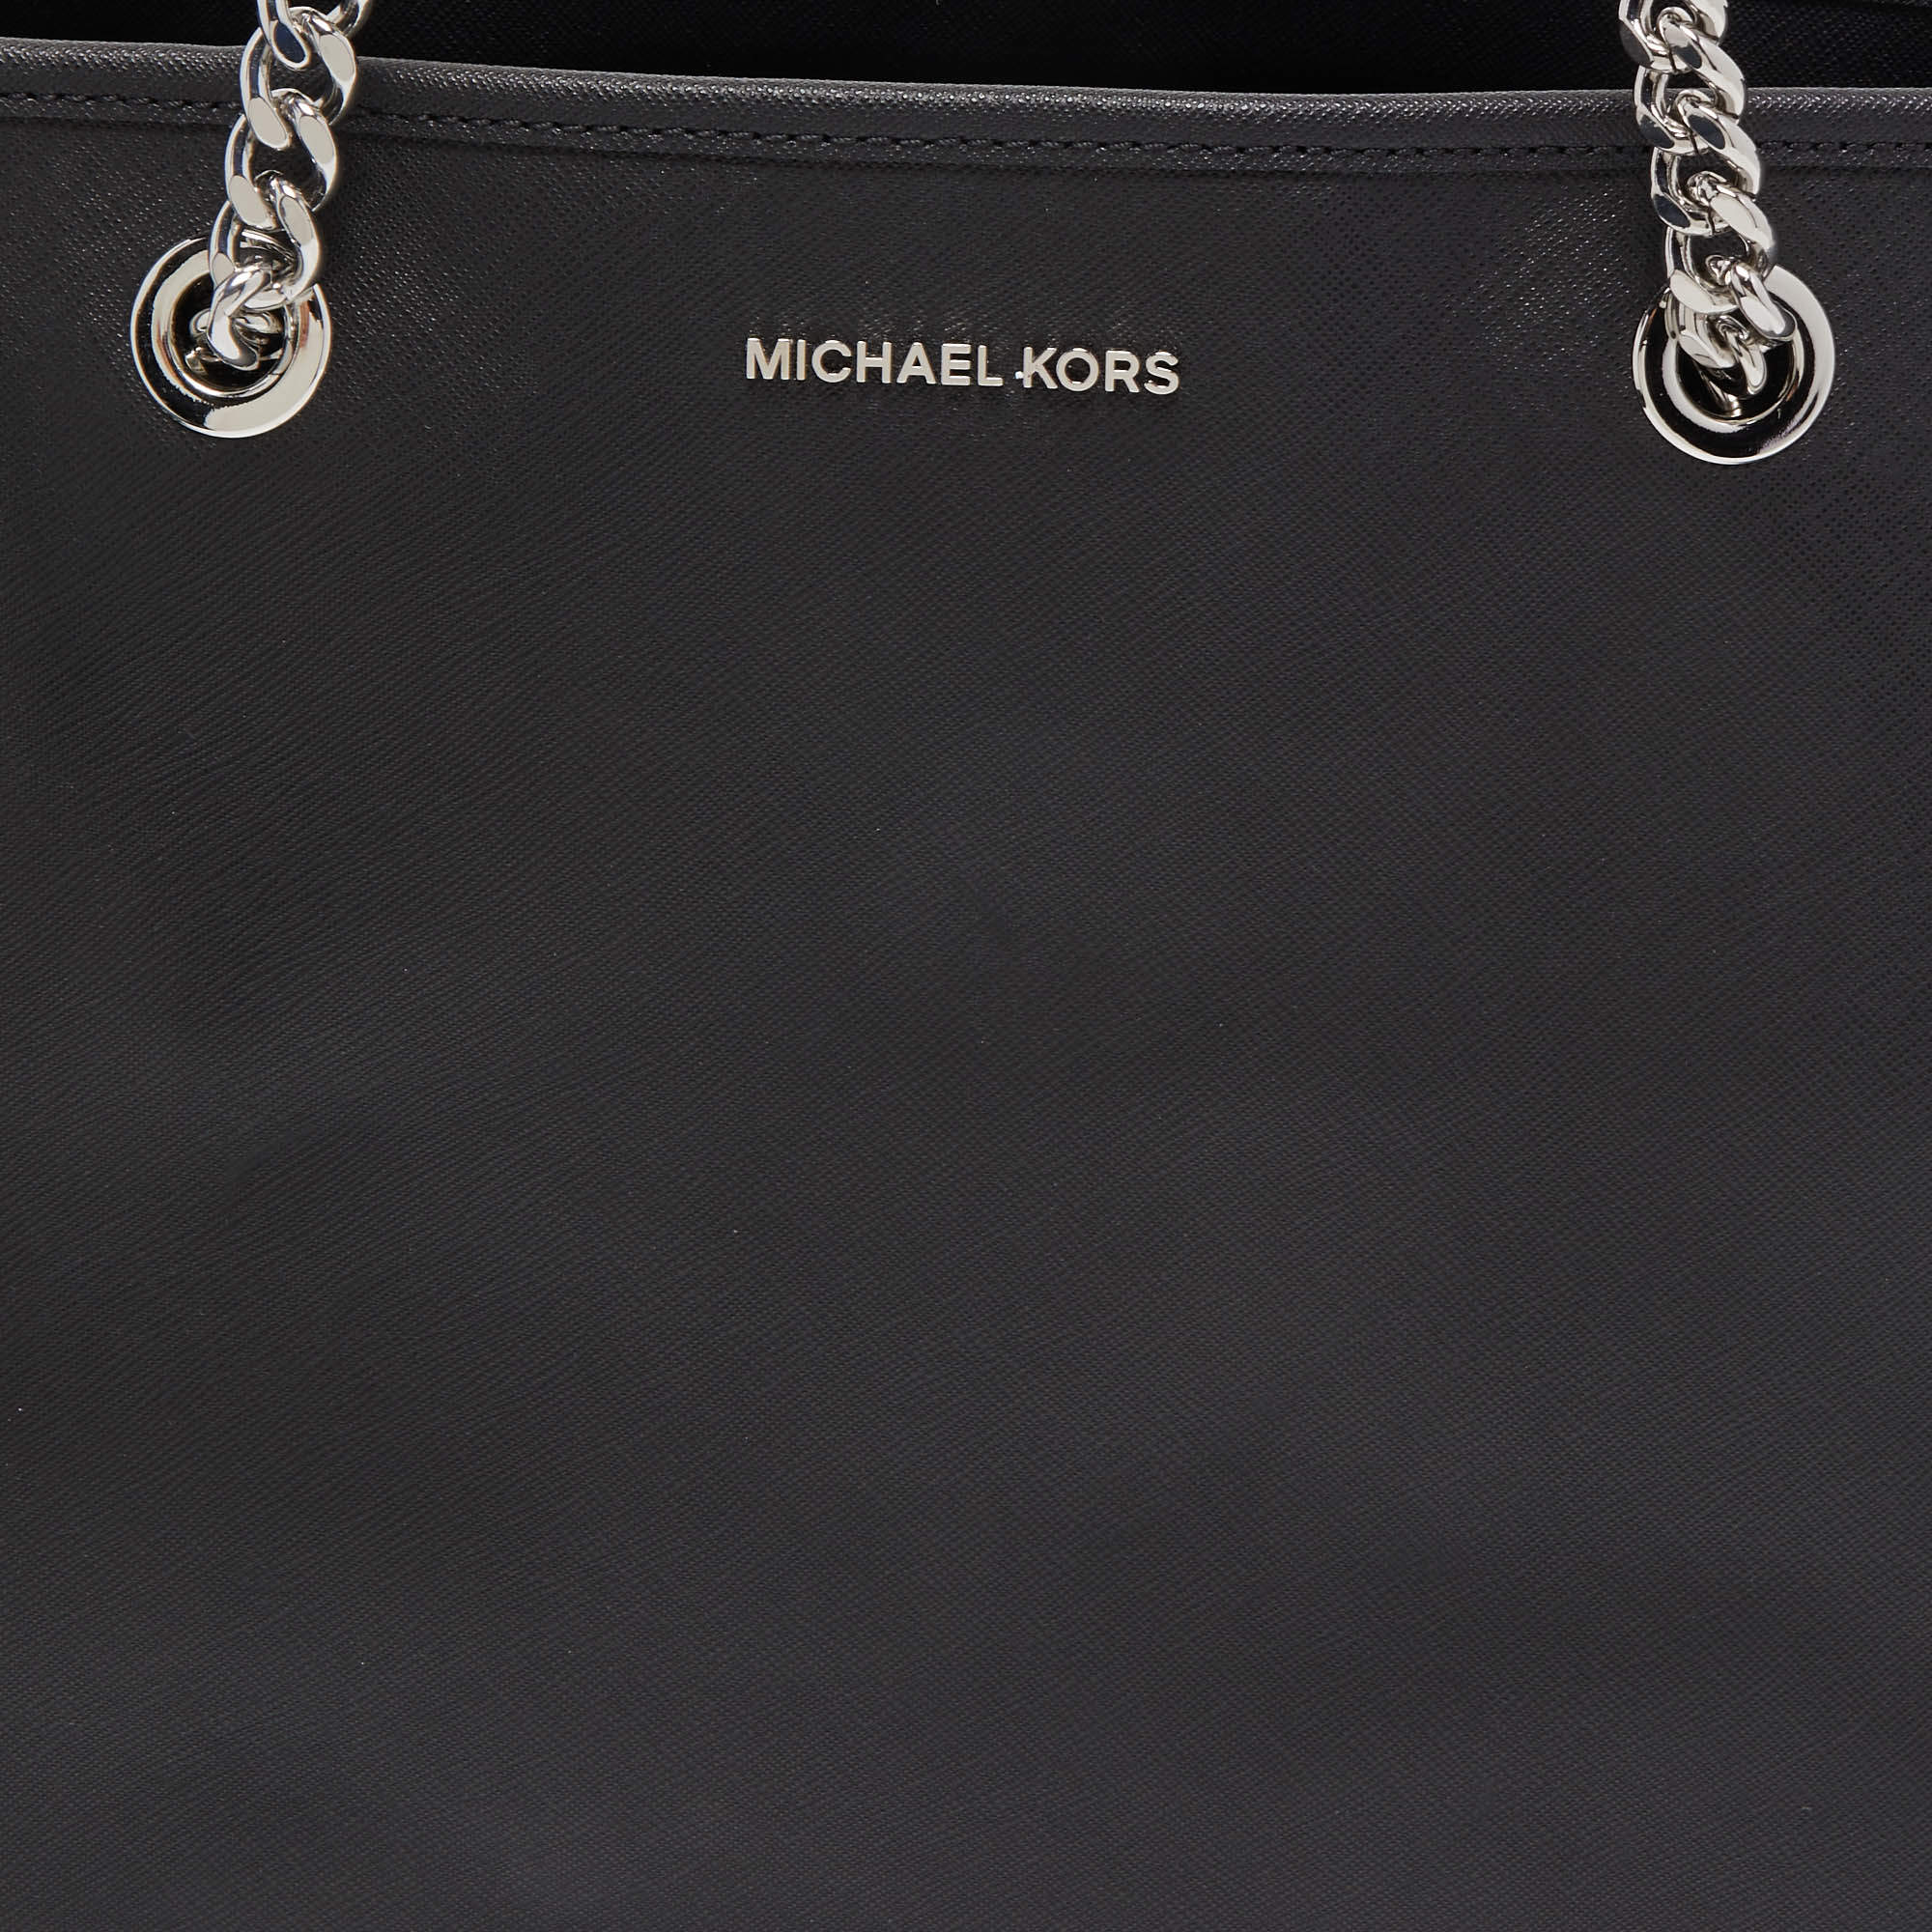 Totes bags Michael Kors - Jet Set Travel Chain medium tote - 30T6GJ8T6L848